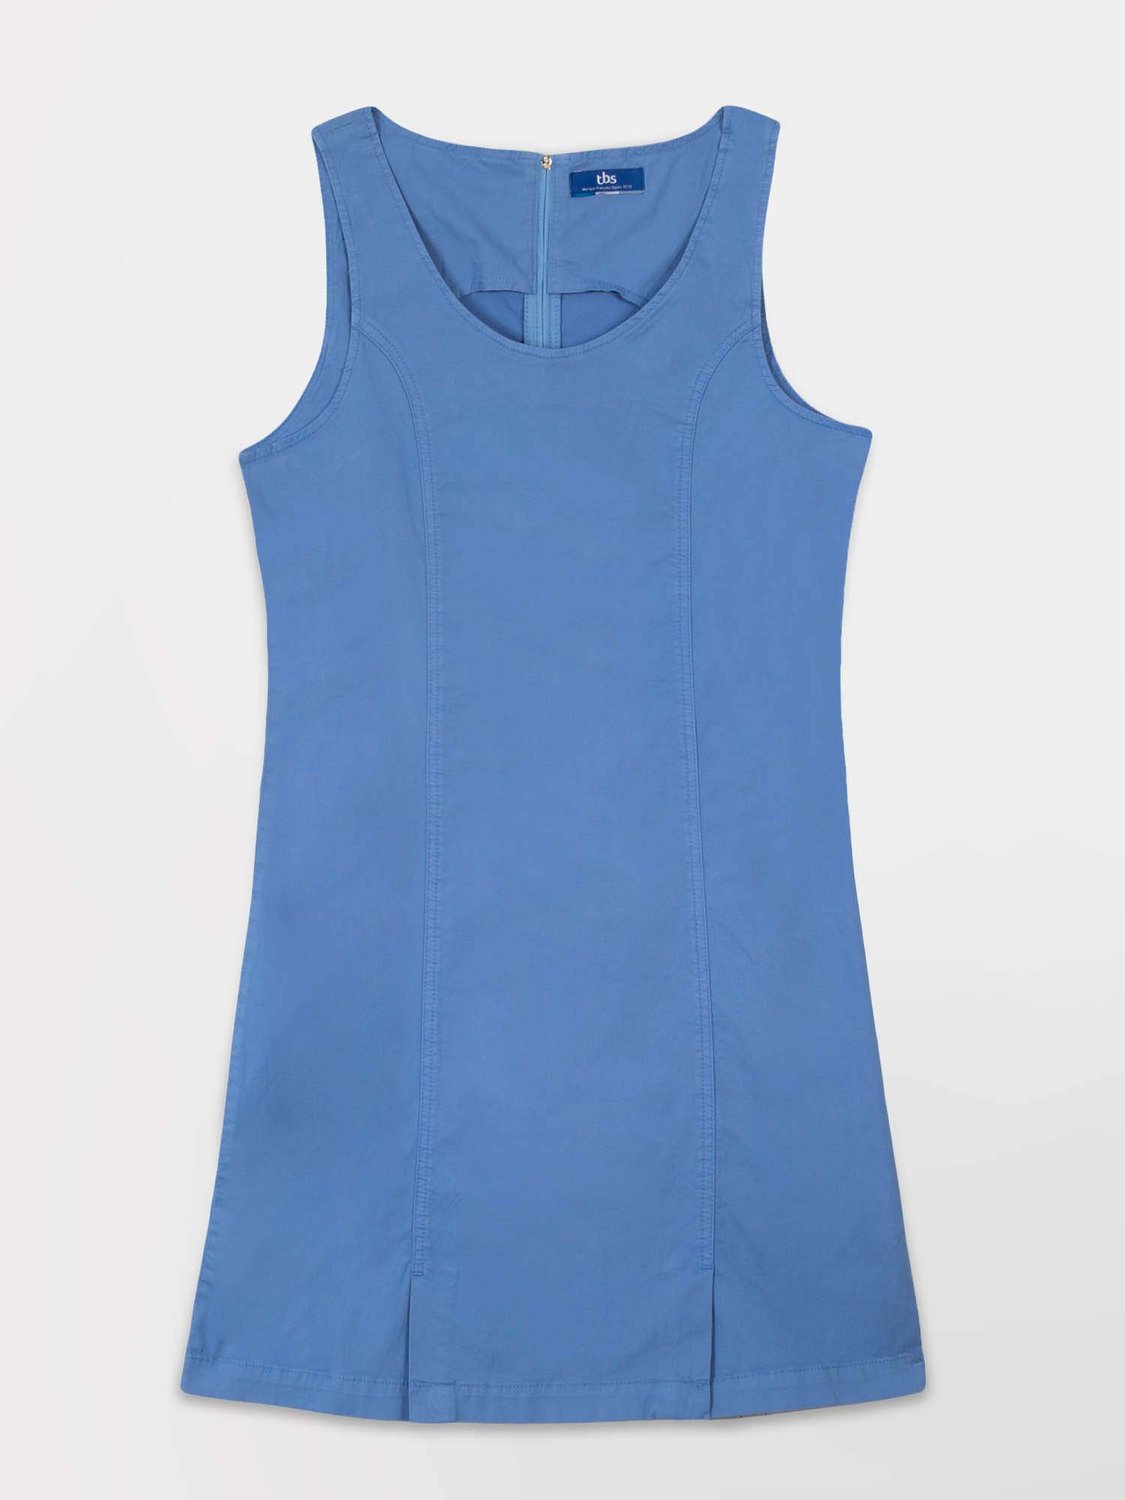 Robe Femme Toile Coton Stretch Bleu